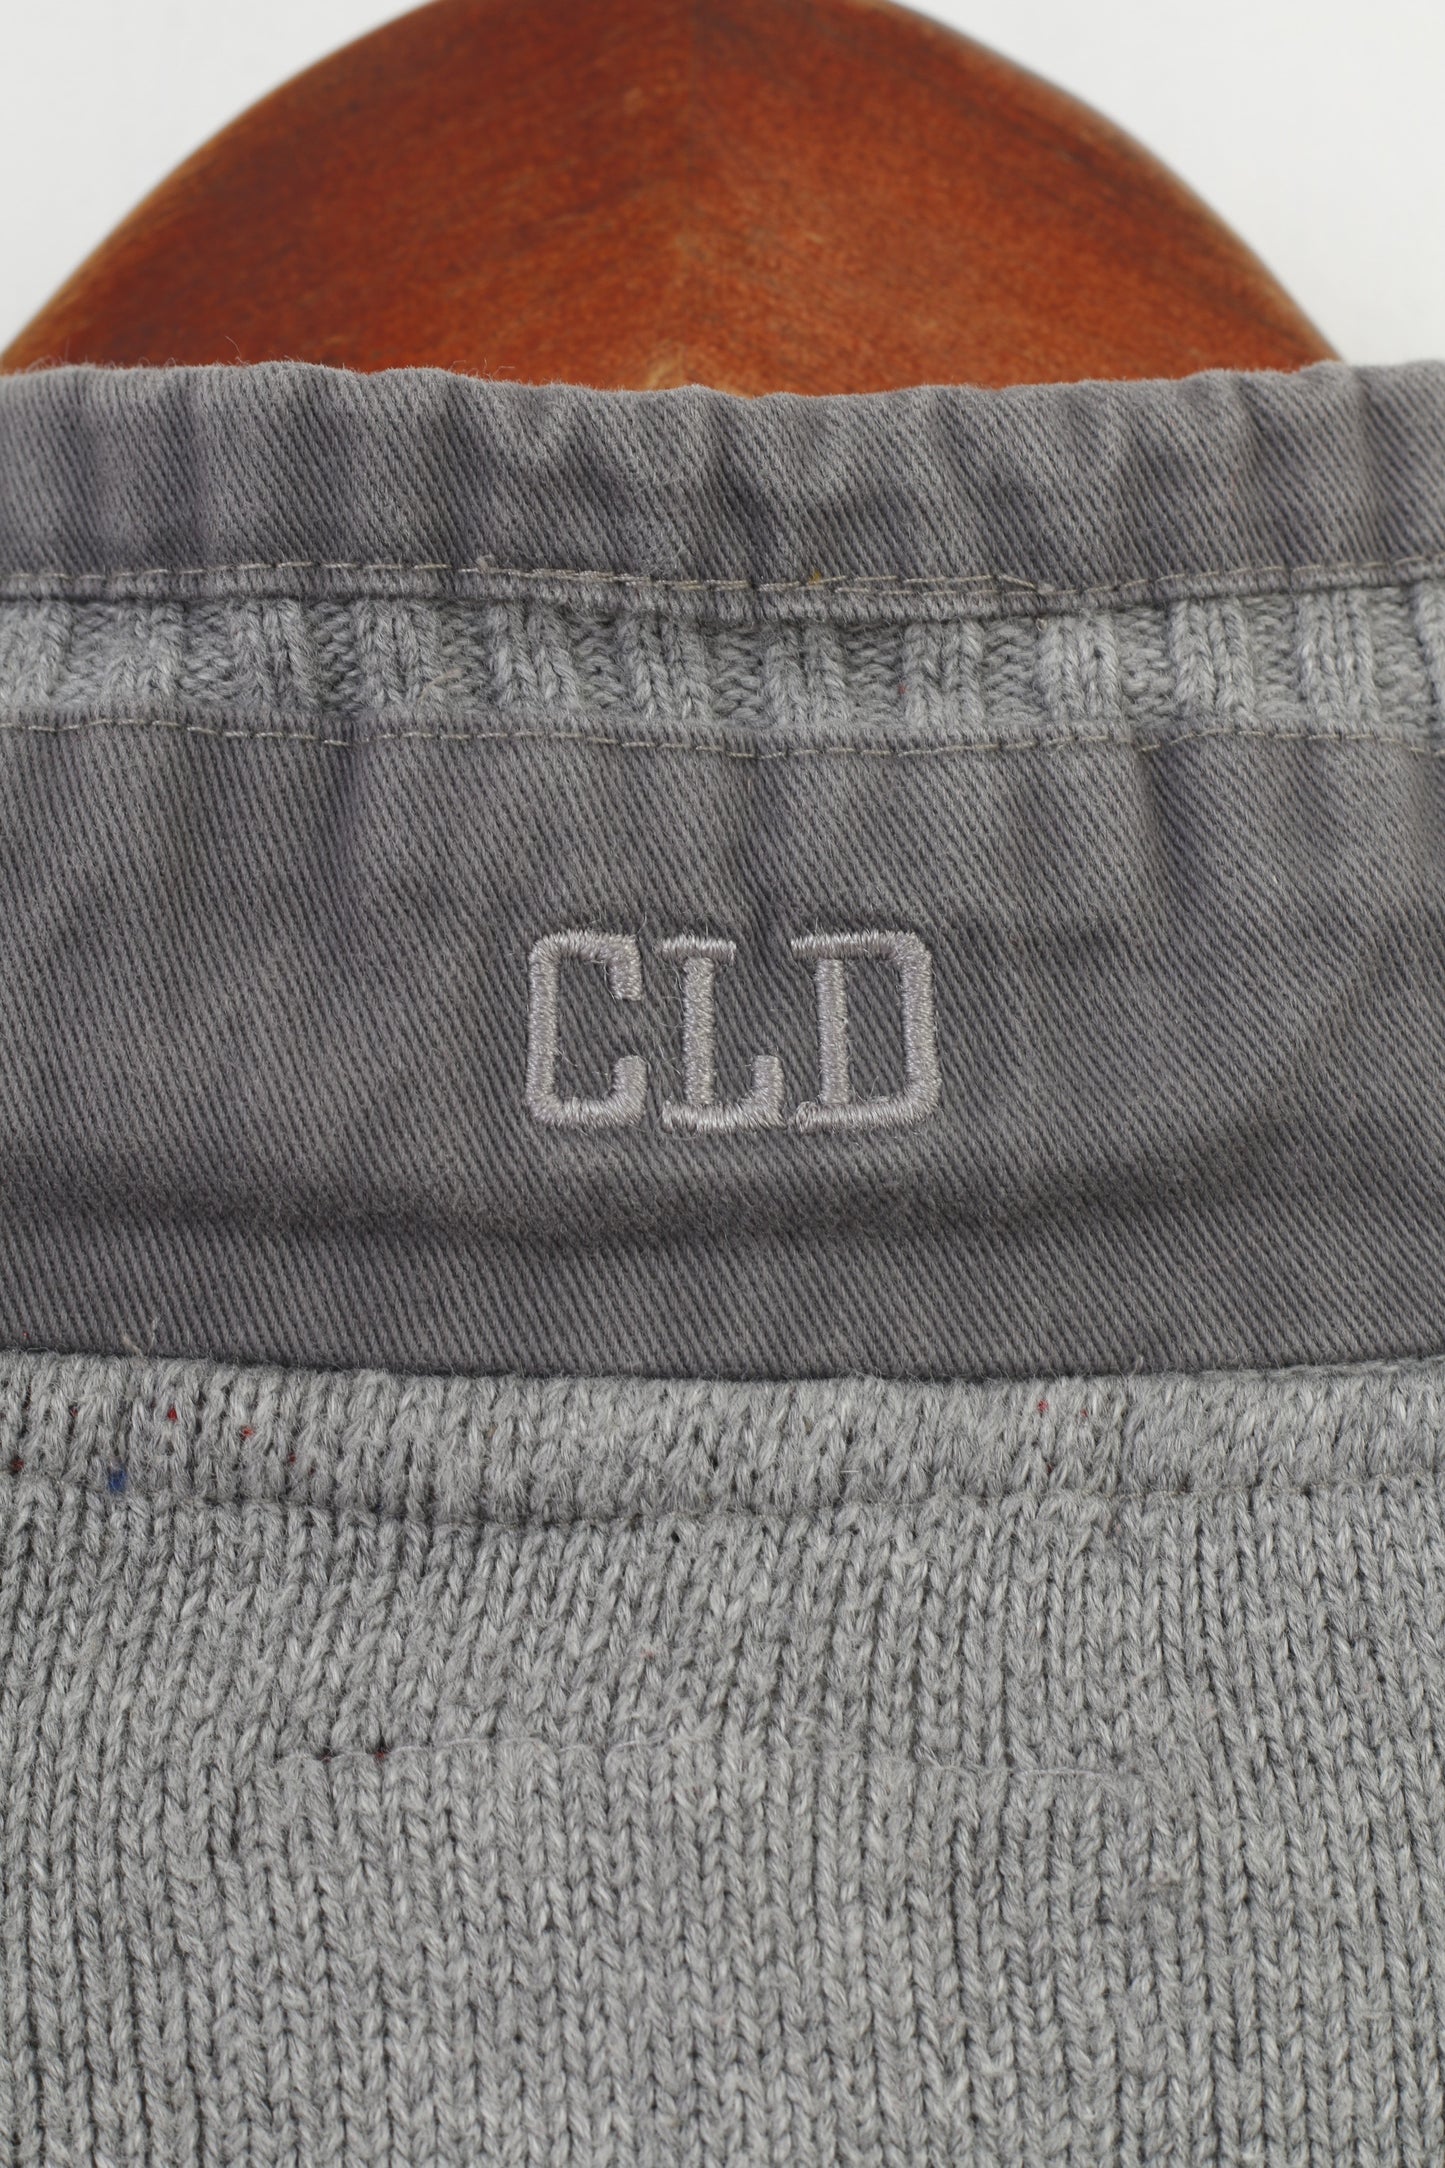 Colorado Denim hommes 2XL pull pull fermeture éclair complète gris coton sweat-shirt haut 